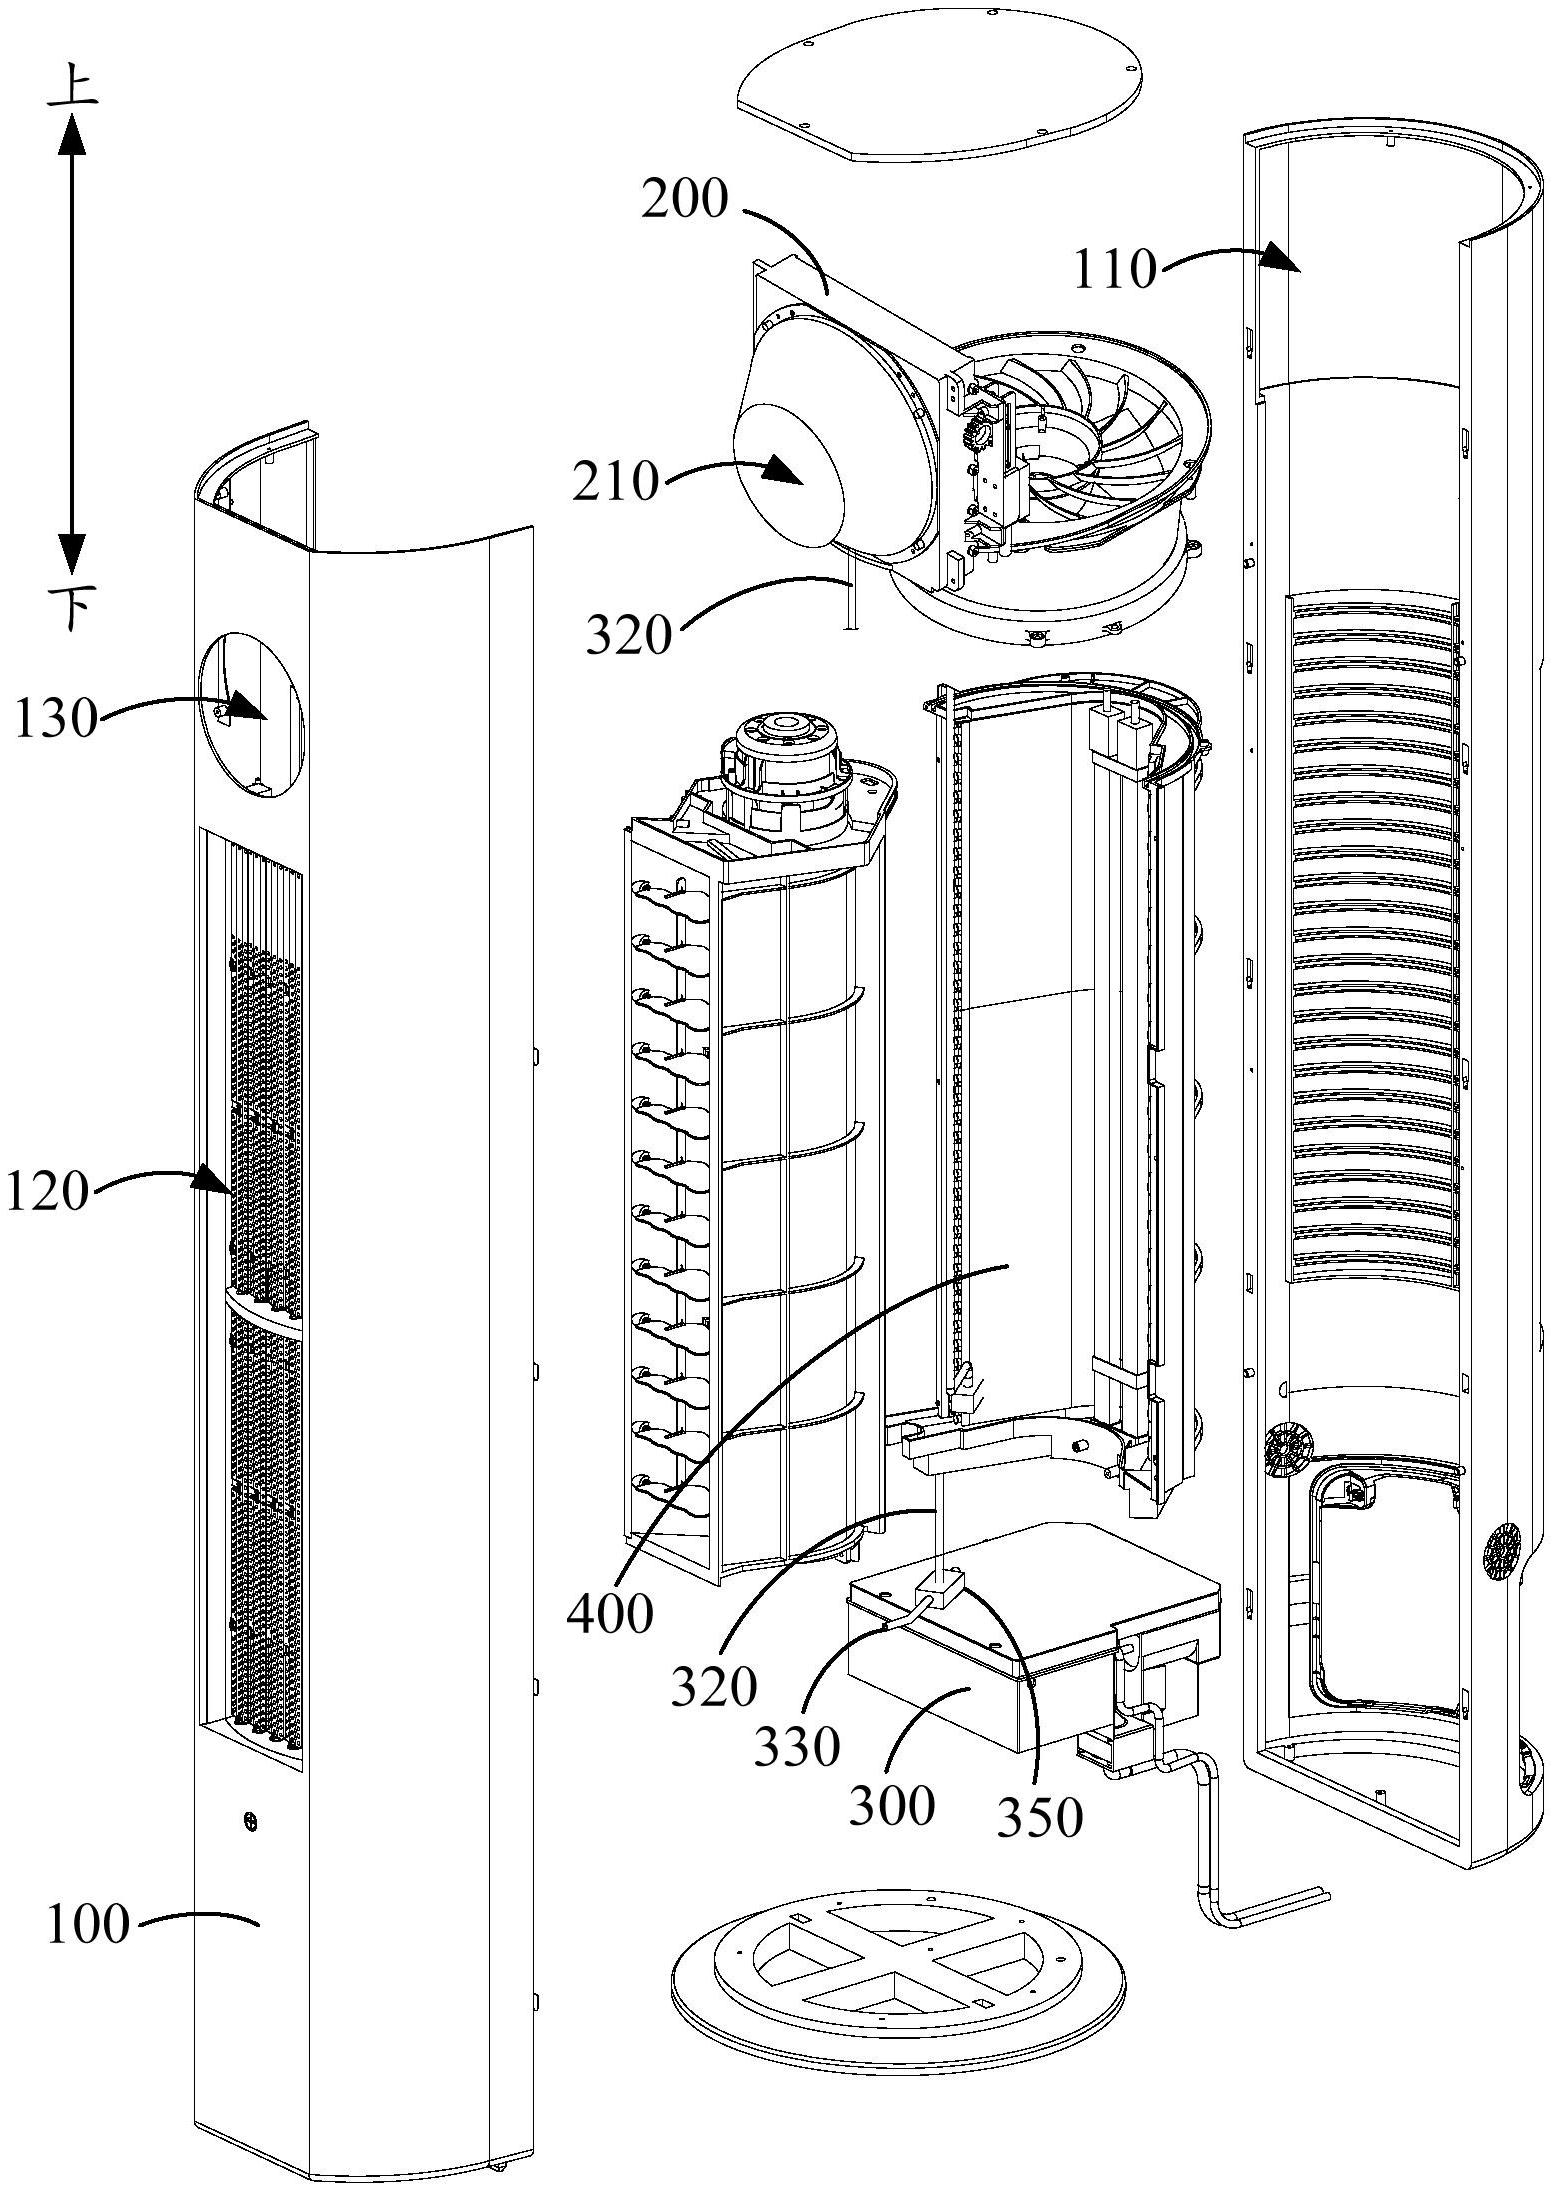 柜式空调内部结构图解图片